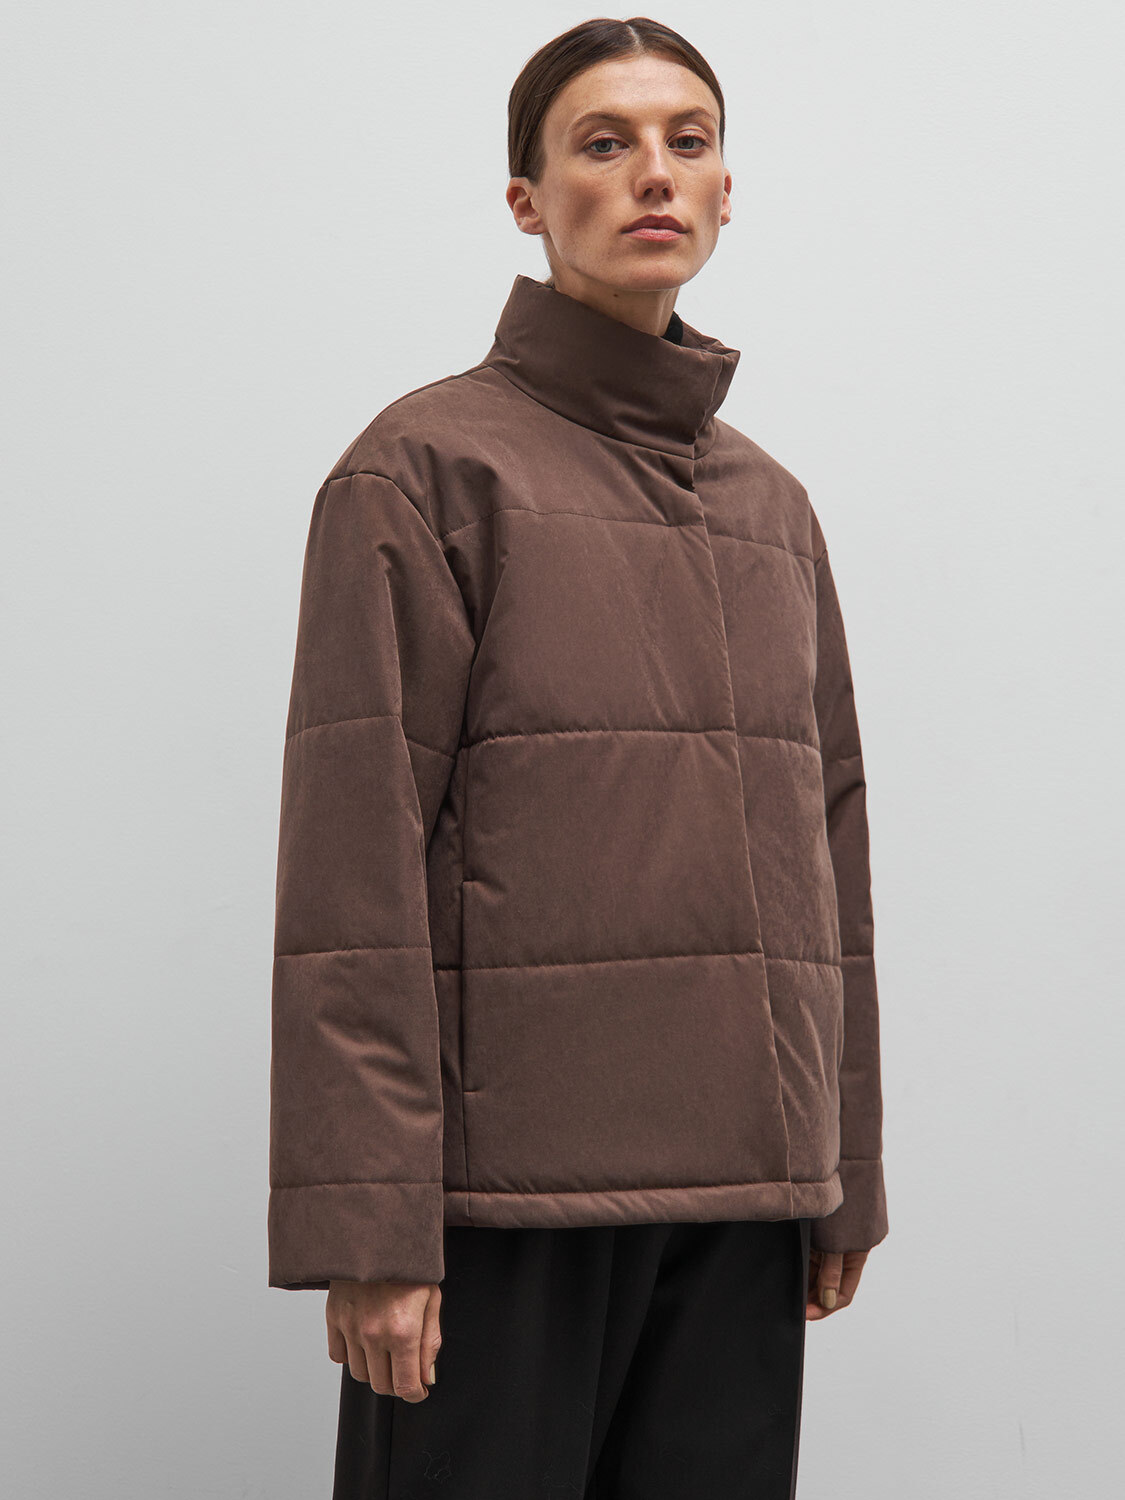 Куртка Рим со съёмным низом gate31 коричневого цвета